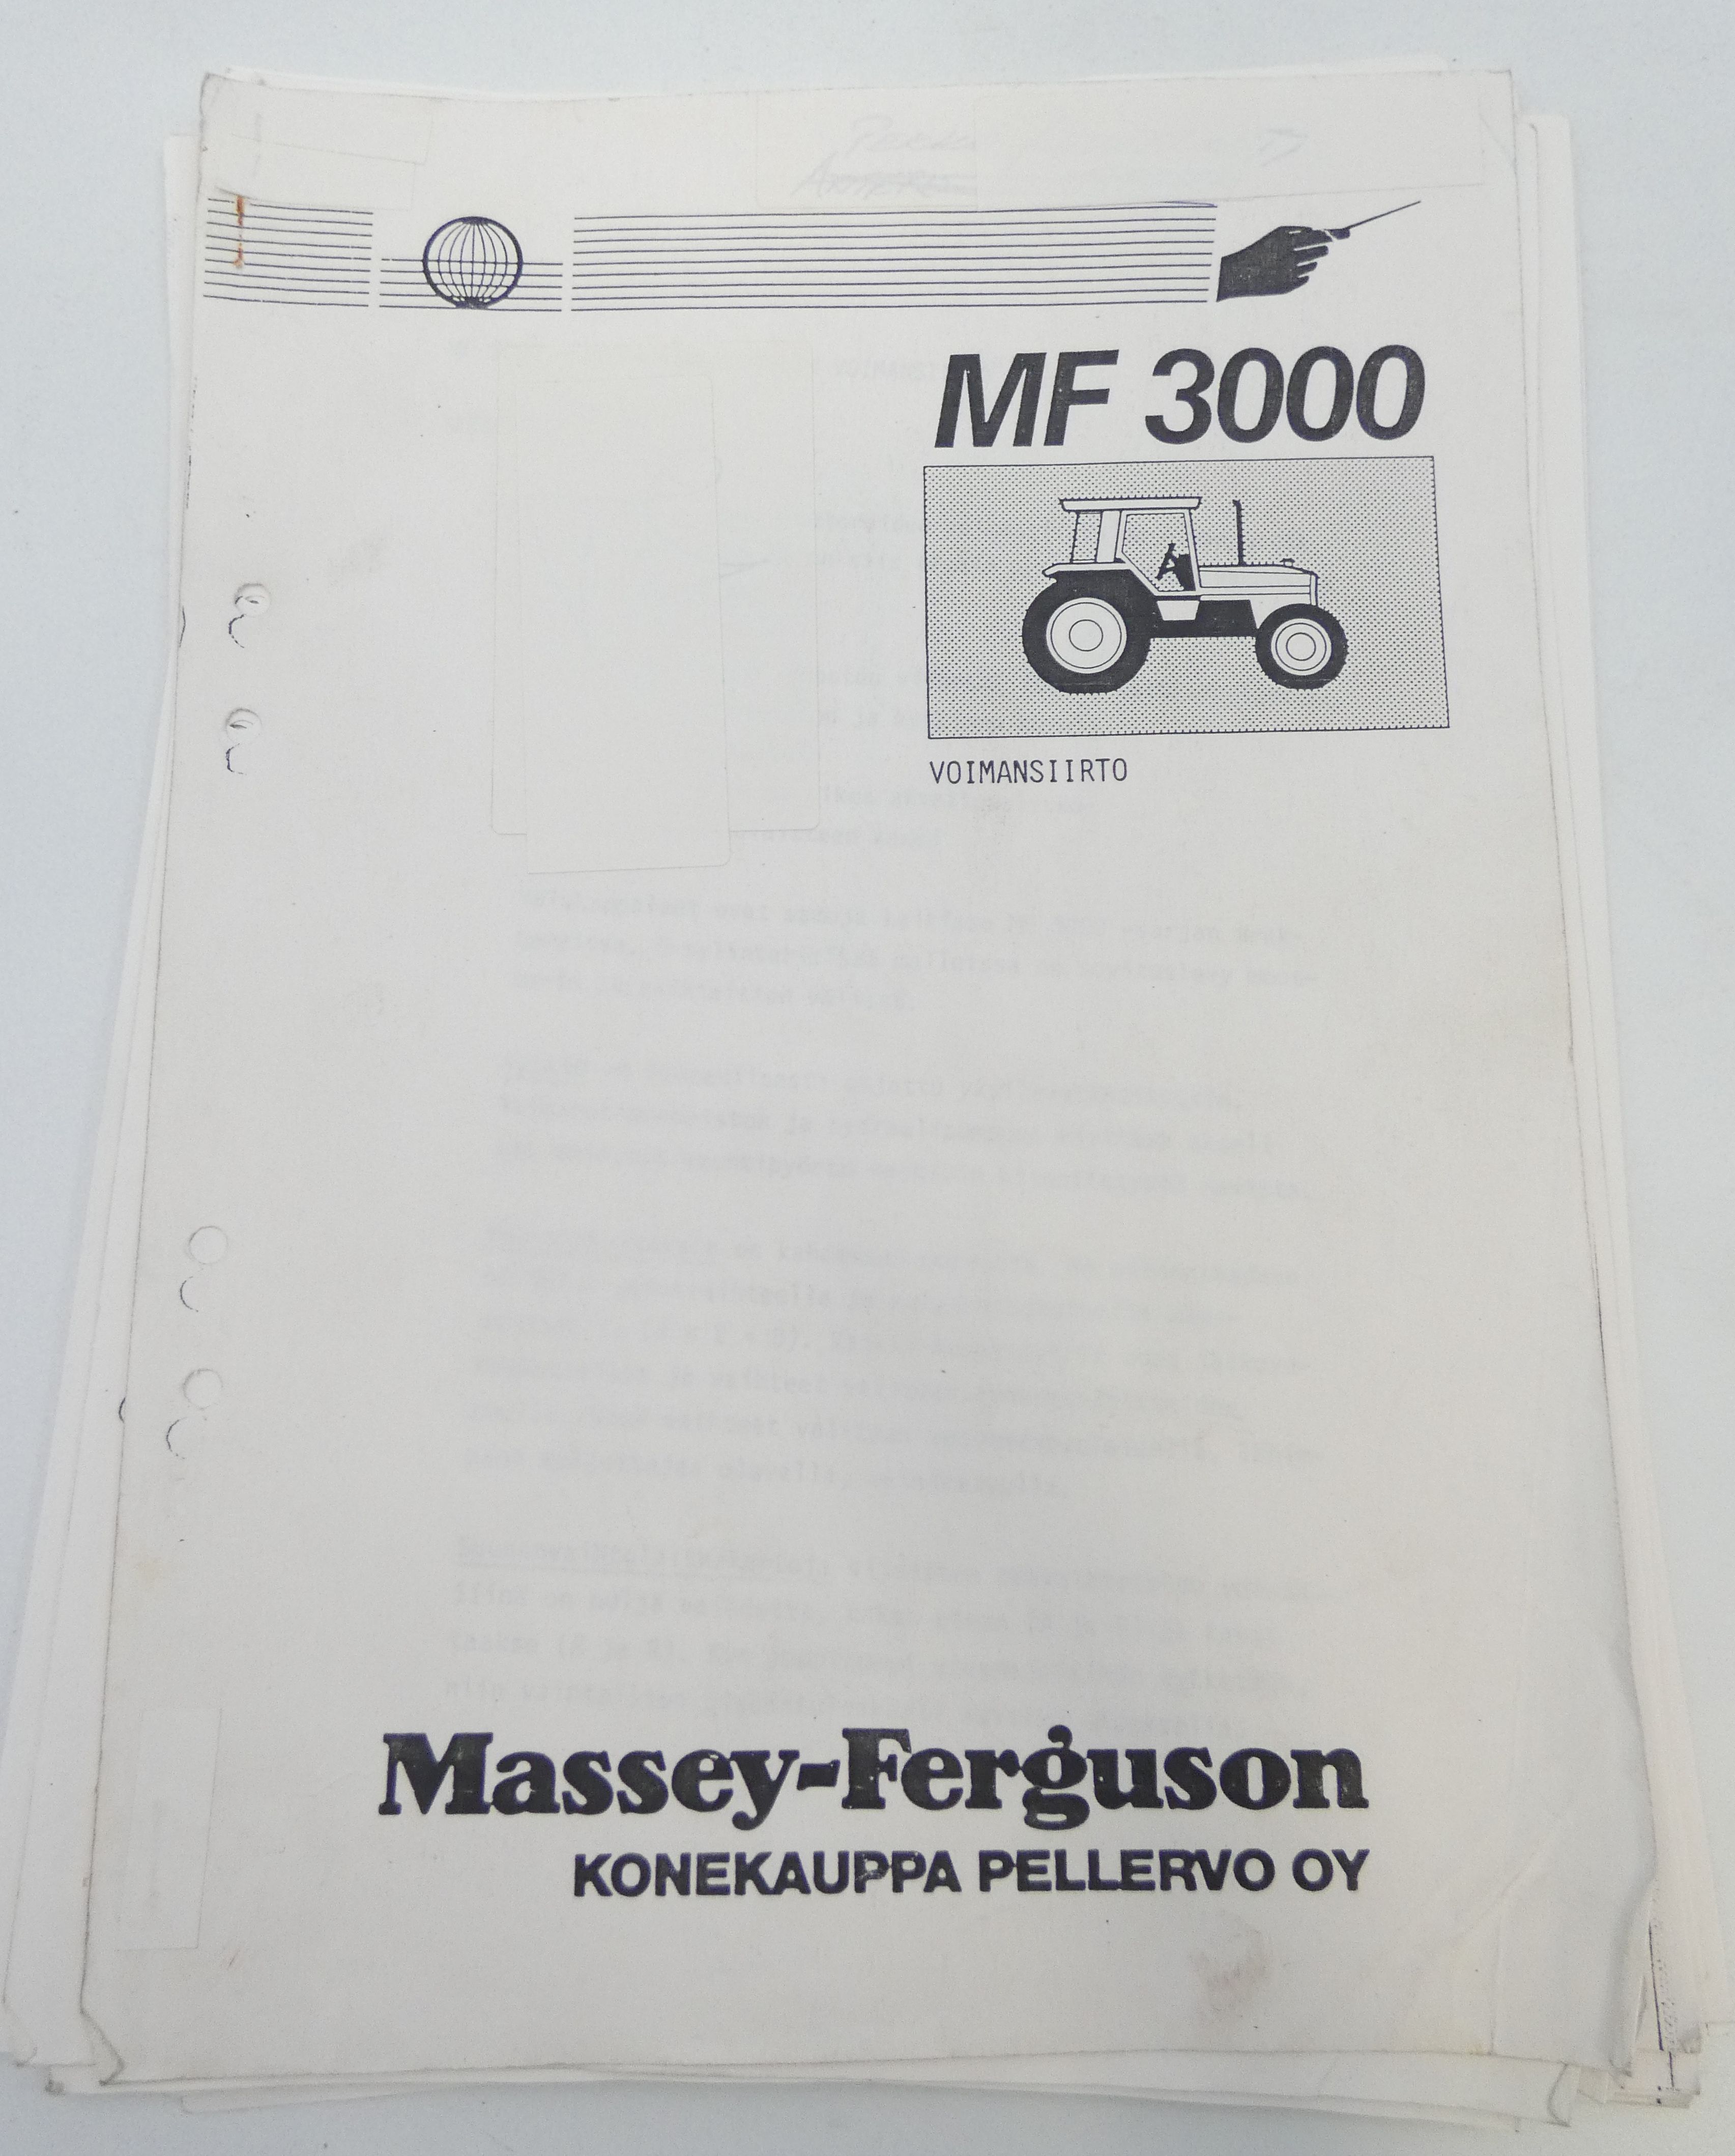 Massey-Ferguson MF3000 voimansiirto ohjekirja